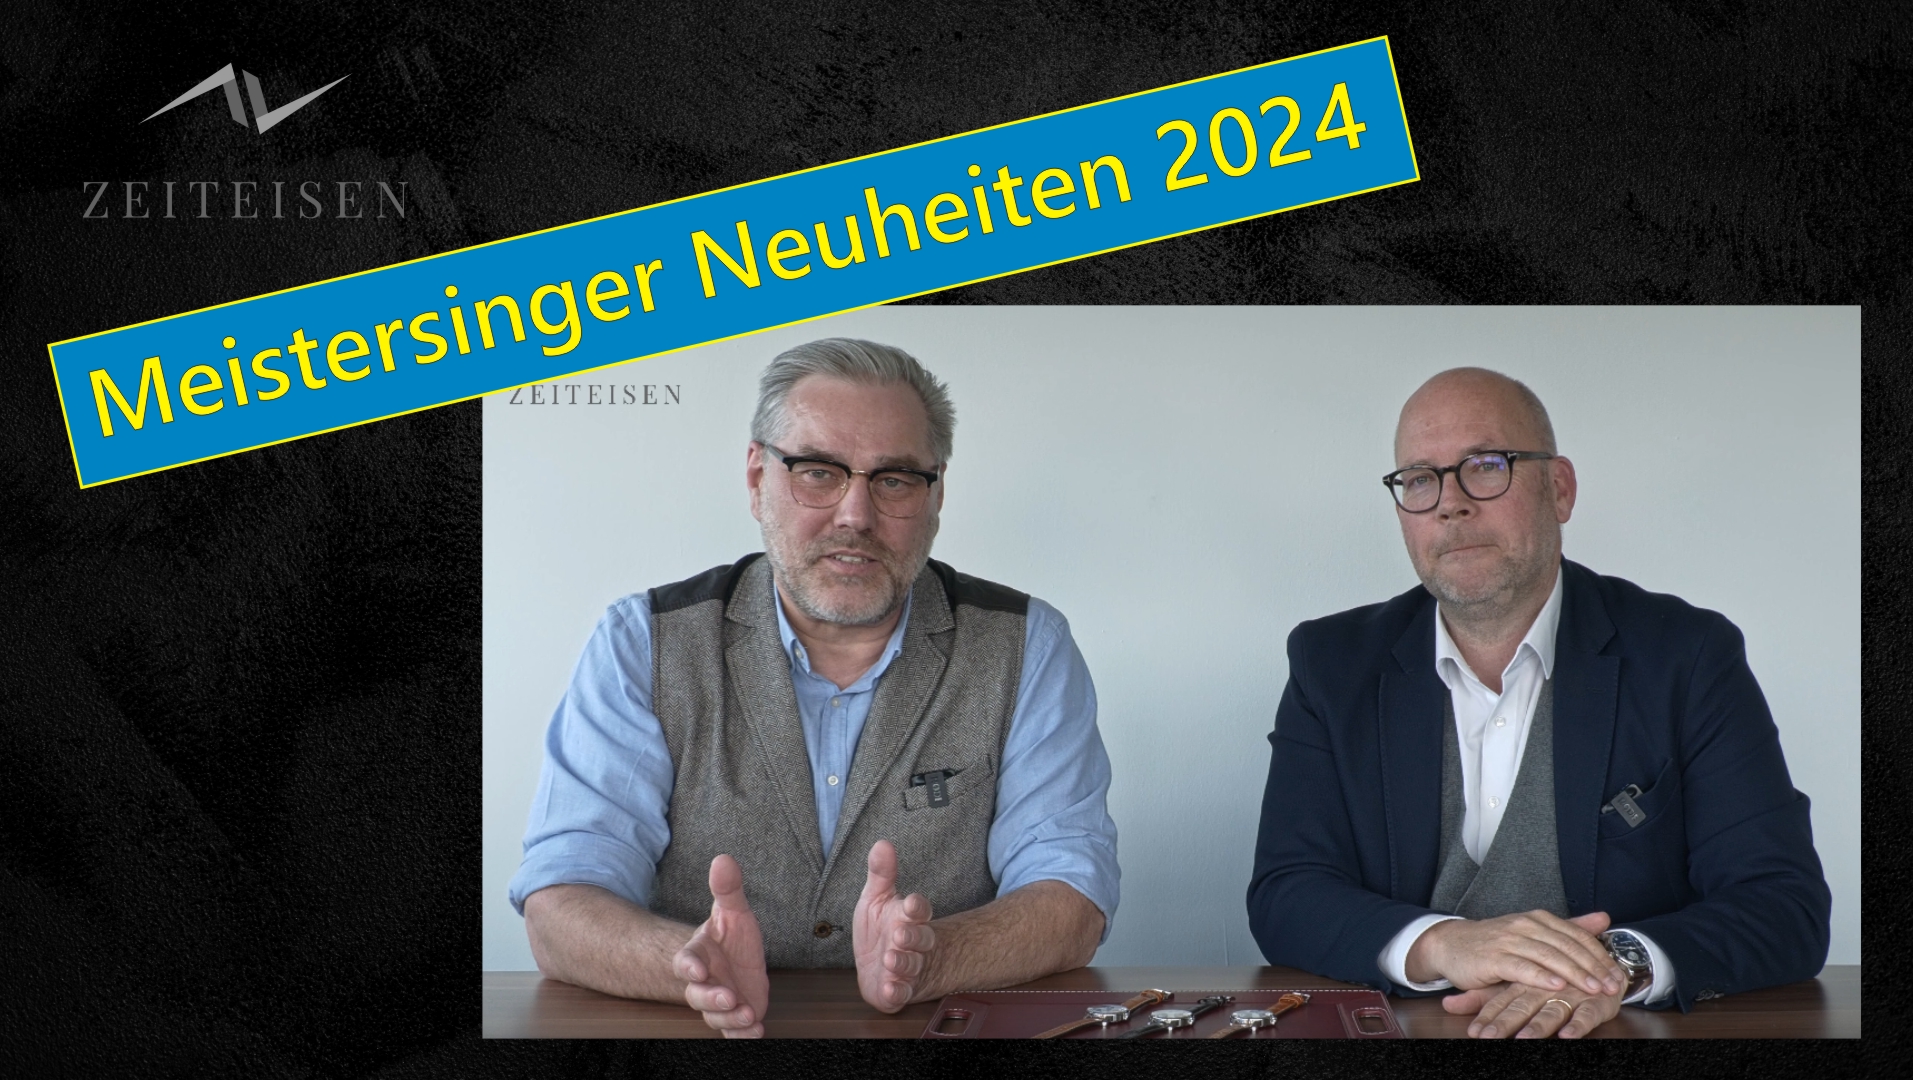 Meistersinger Neuheiten 2024 Mathias Görde